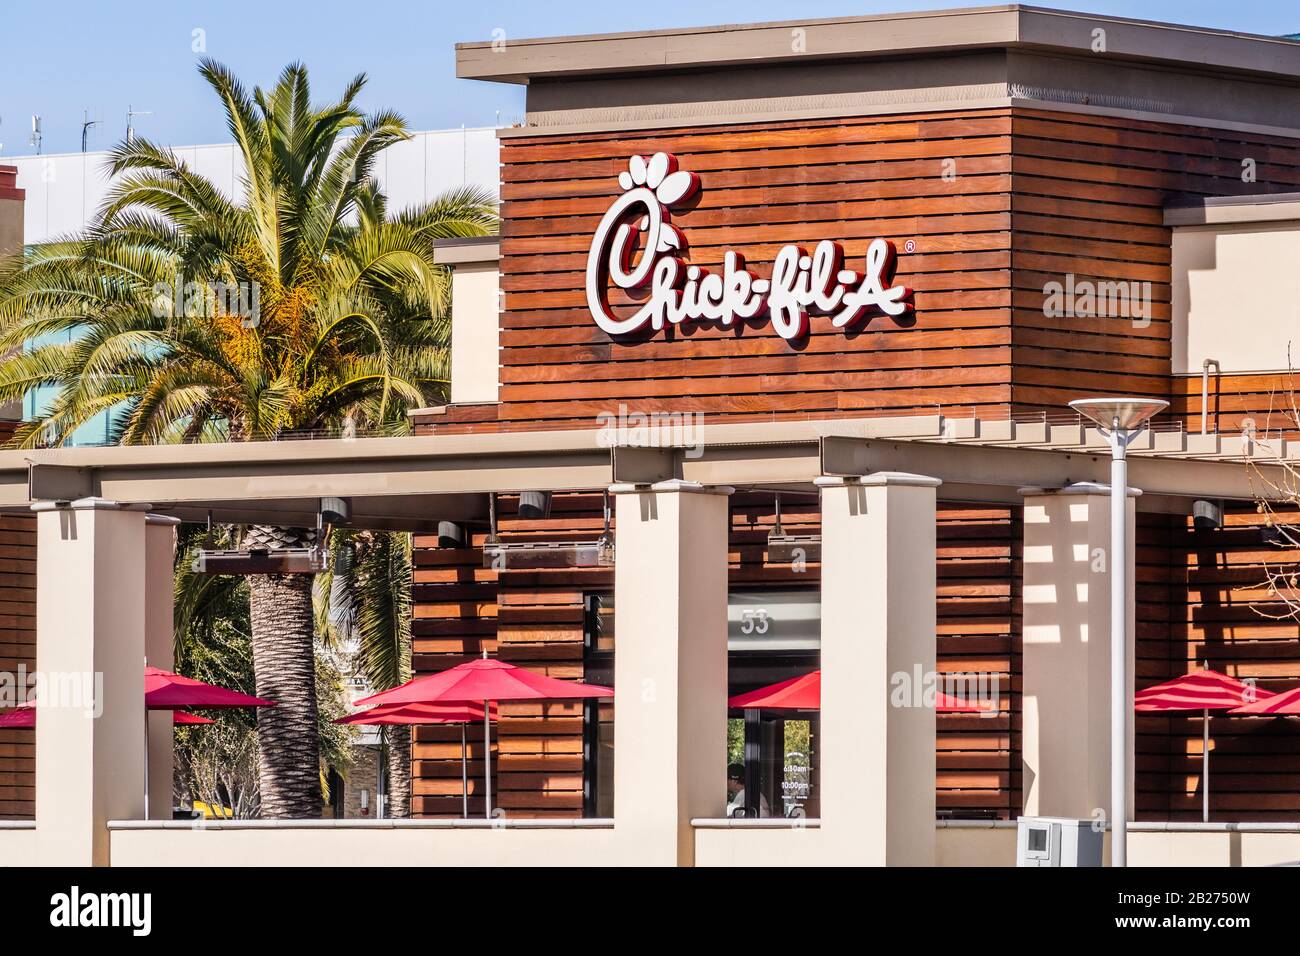 Februar 2020 Santa Clara/CA/USA - Chick-fil-A-Standort im Süden der Bucht von San Francisco; Chick-fil-A ist das größte amerikanische Fast-Food-Restaurant c Stockfoto